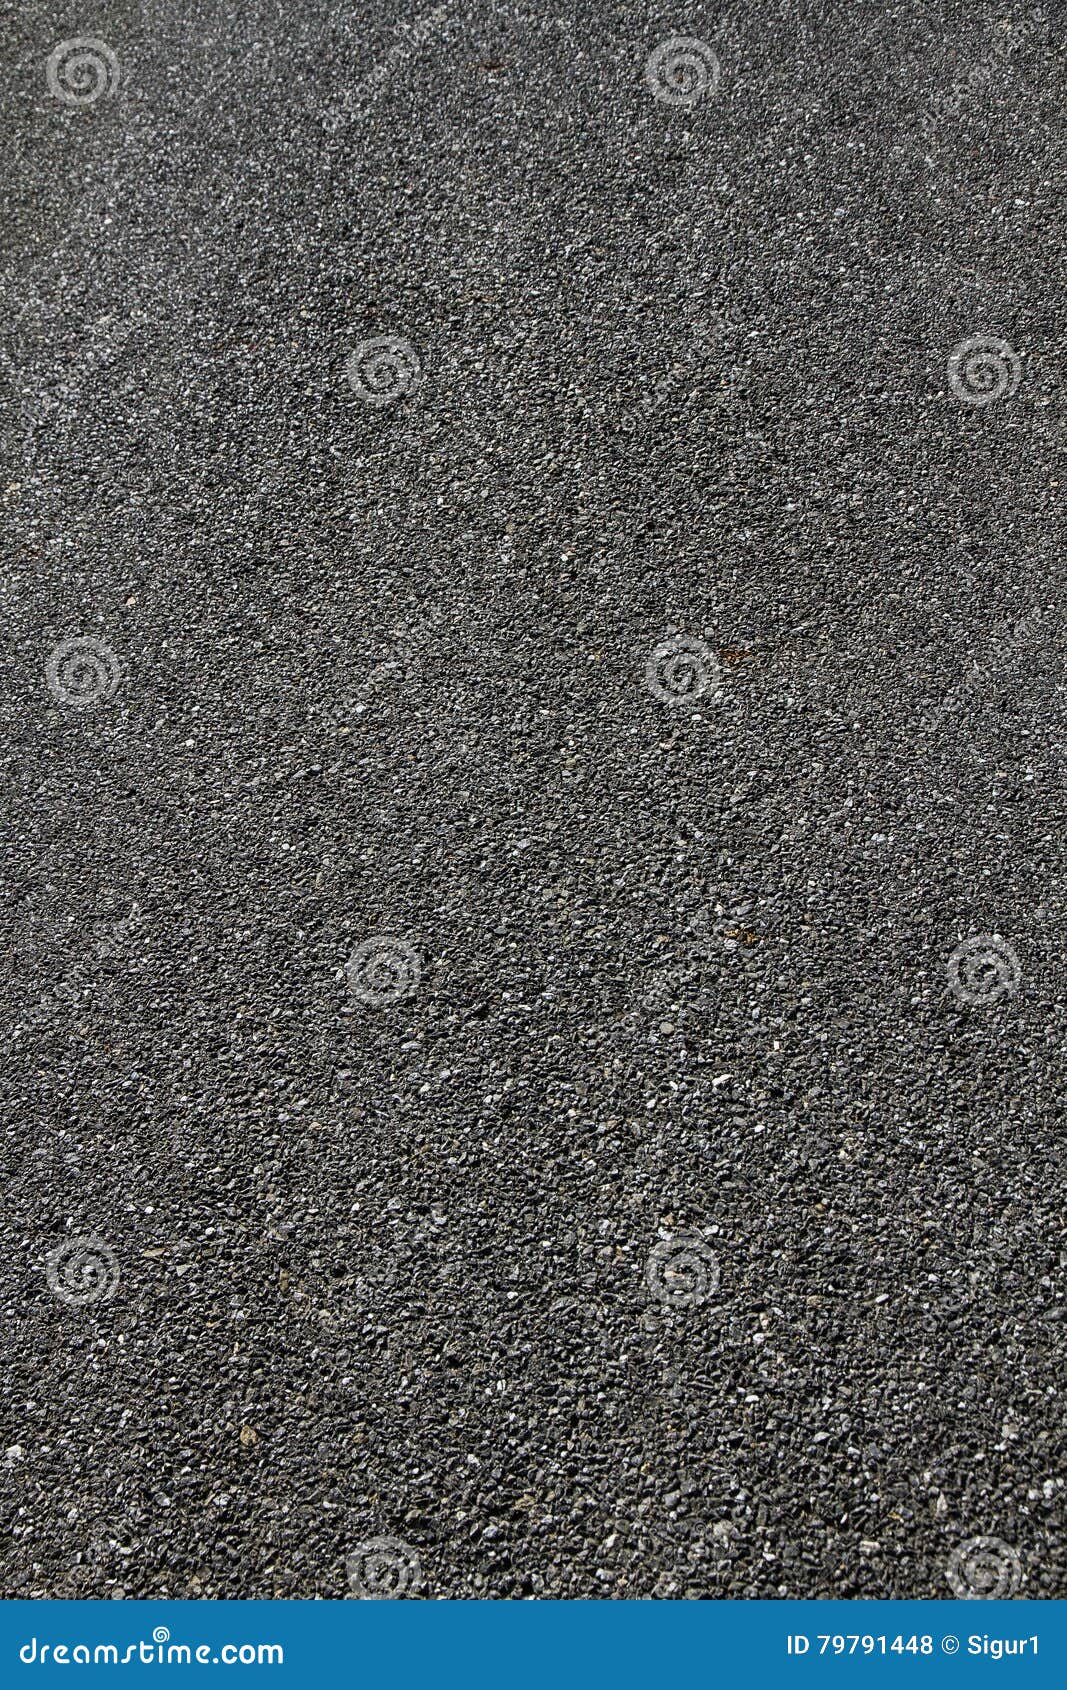 texture asphalt